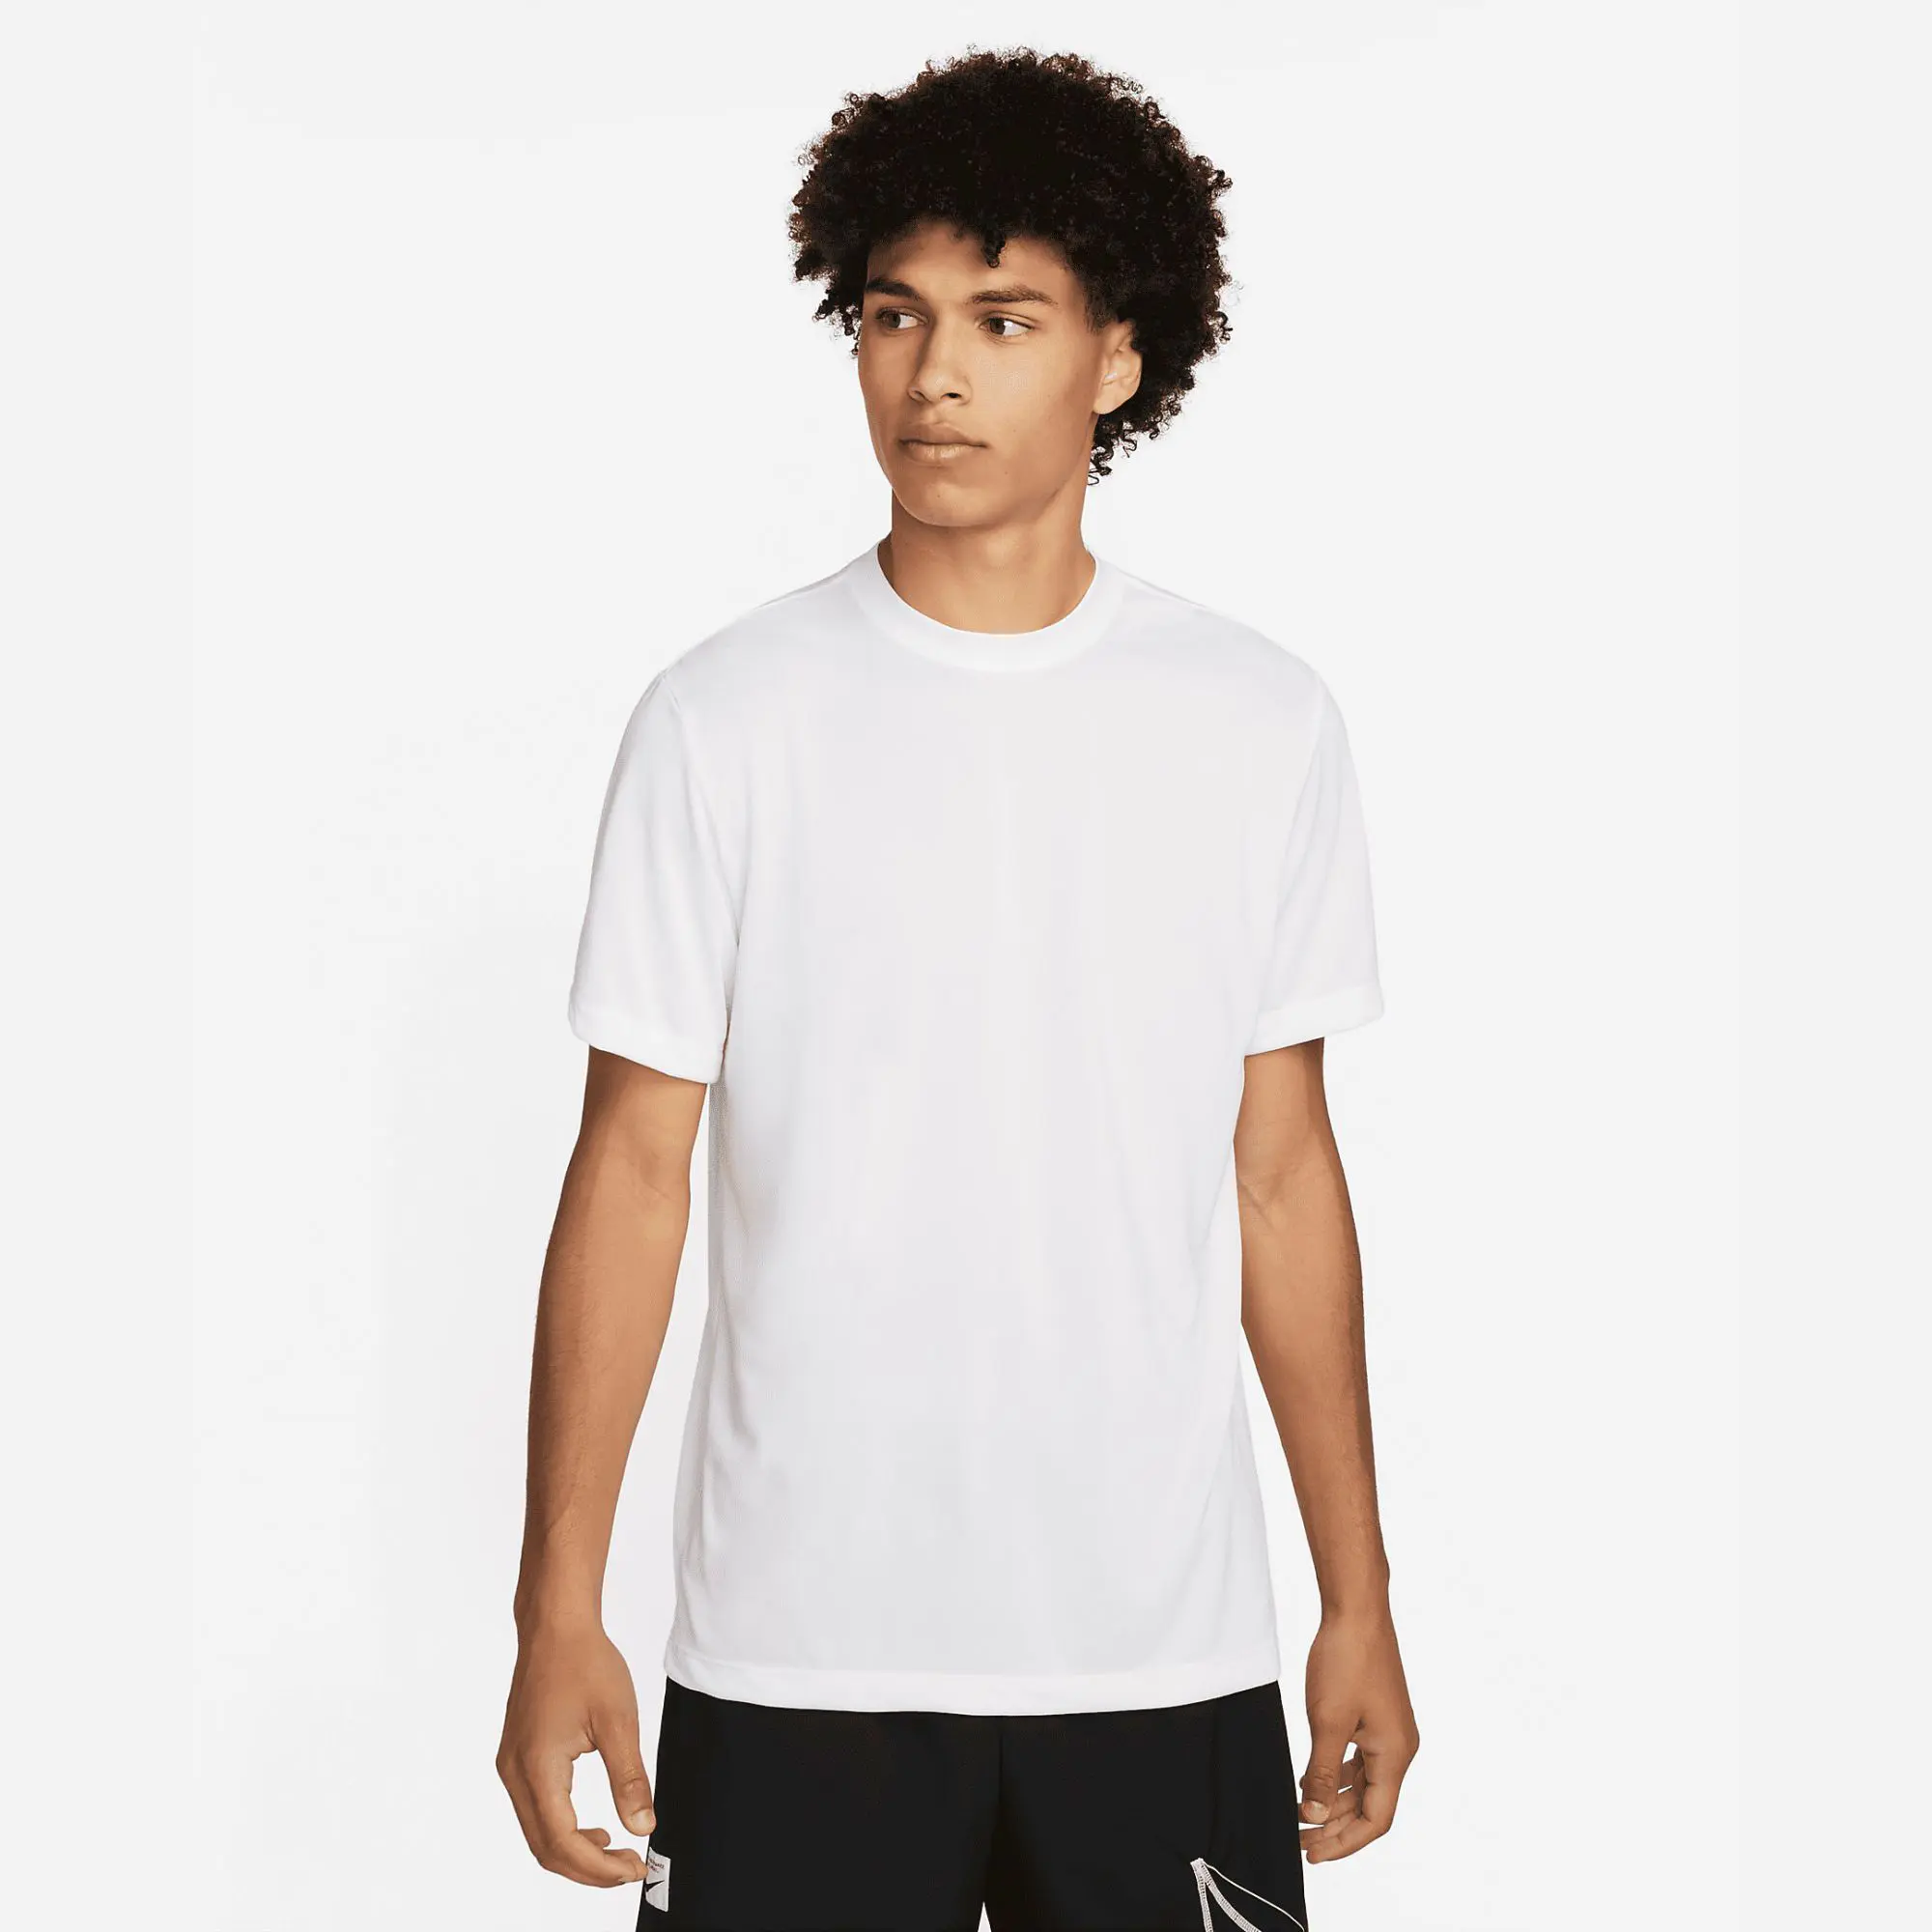 Camiseta deportiva XL para hombre, 100% poliéster, jersey blanco, tela de ajuste estándar relajado, banda para el cuello acanalada, patrón de impresión, técnica lisa